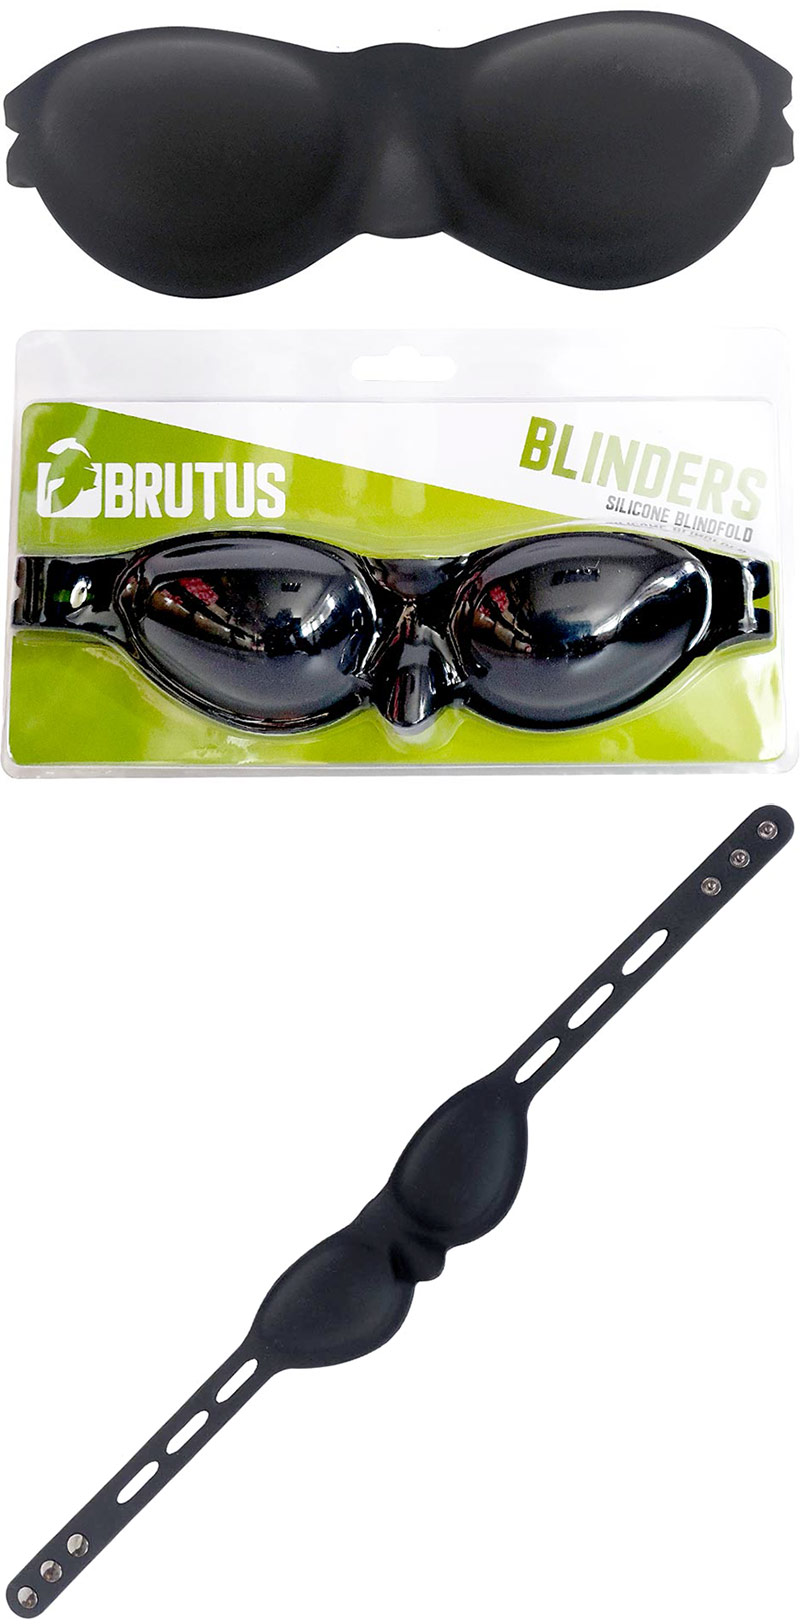 Bandeau en silicone pour les yeux Brutus Blinders